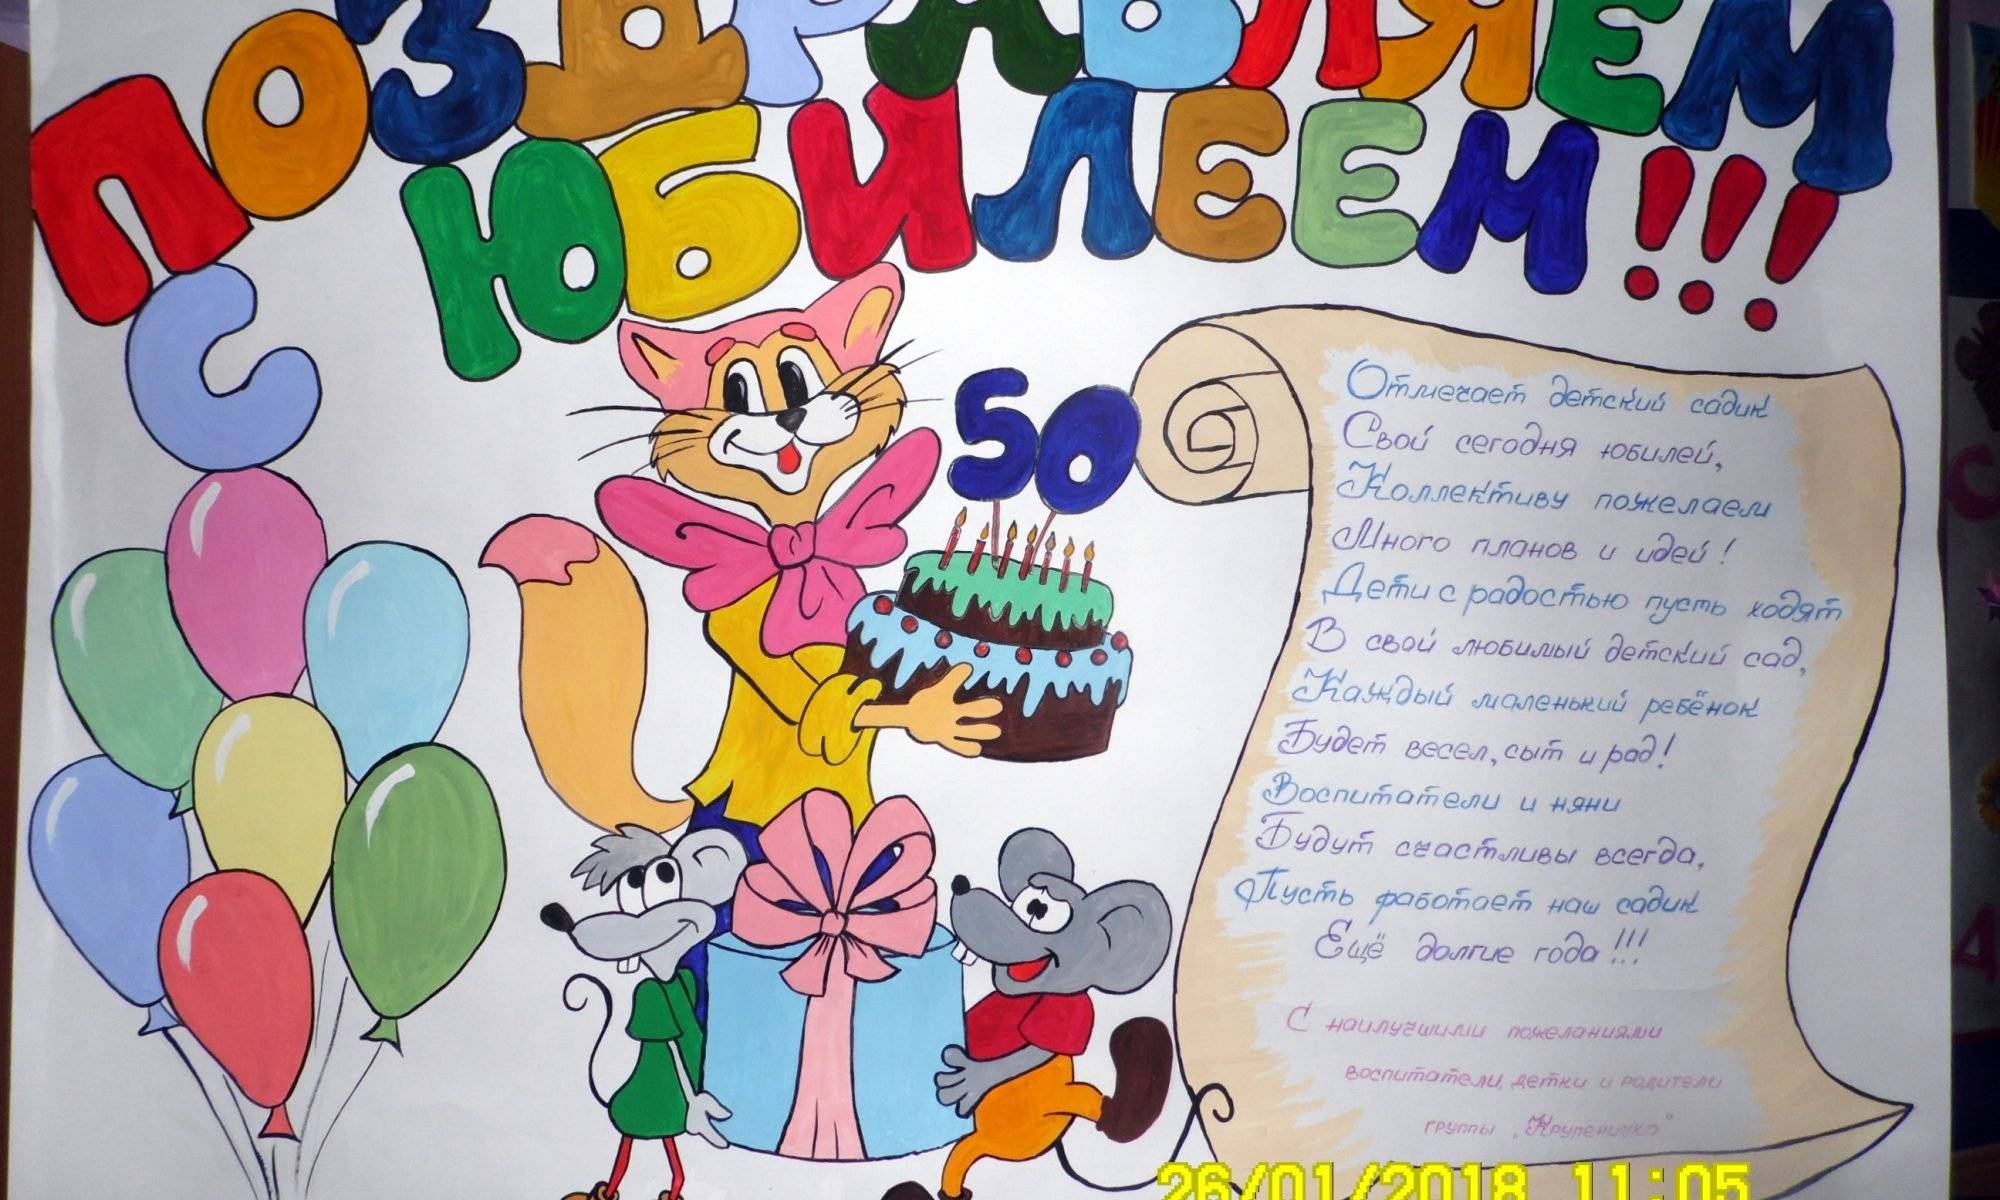 ᐉ как оформить плакат на день рождения. стенгазета ко дню рождения — женщине, мужчине, ребенку - mariya-mironova.ru